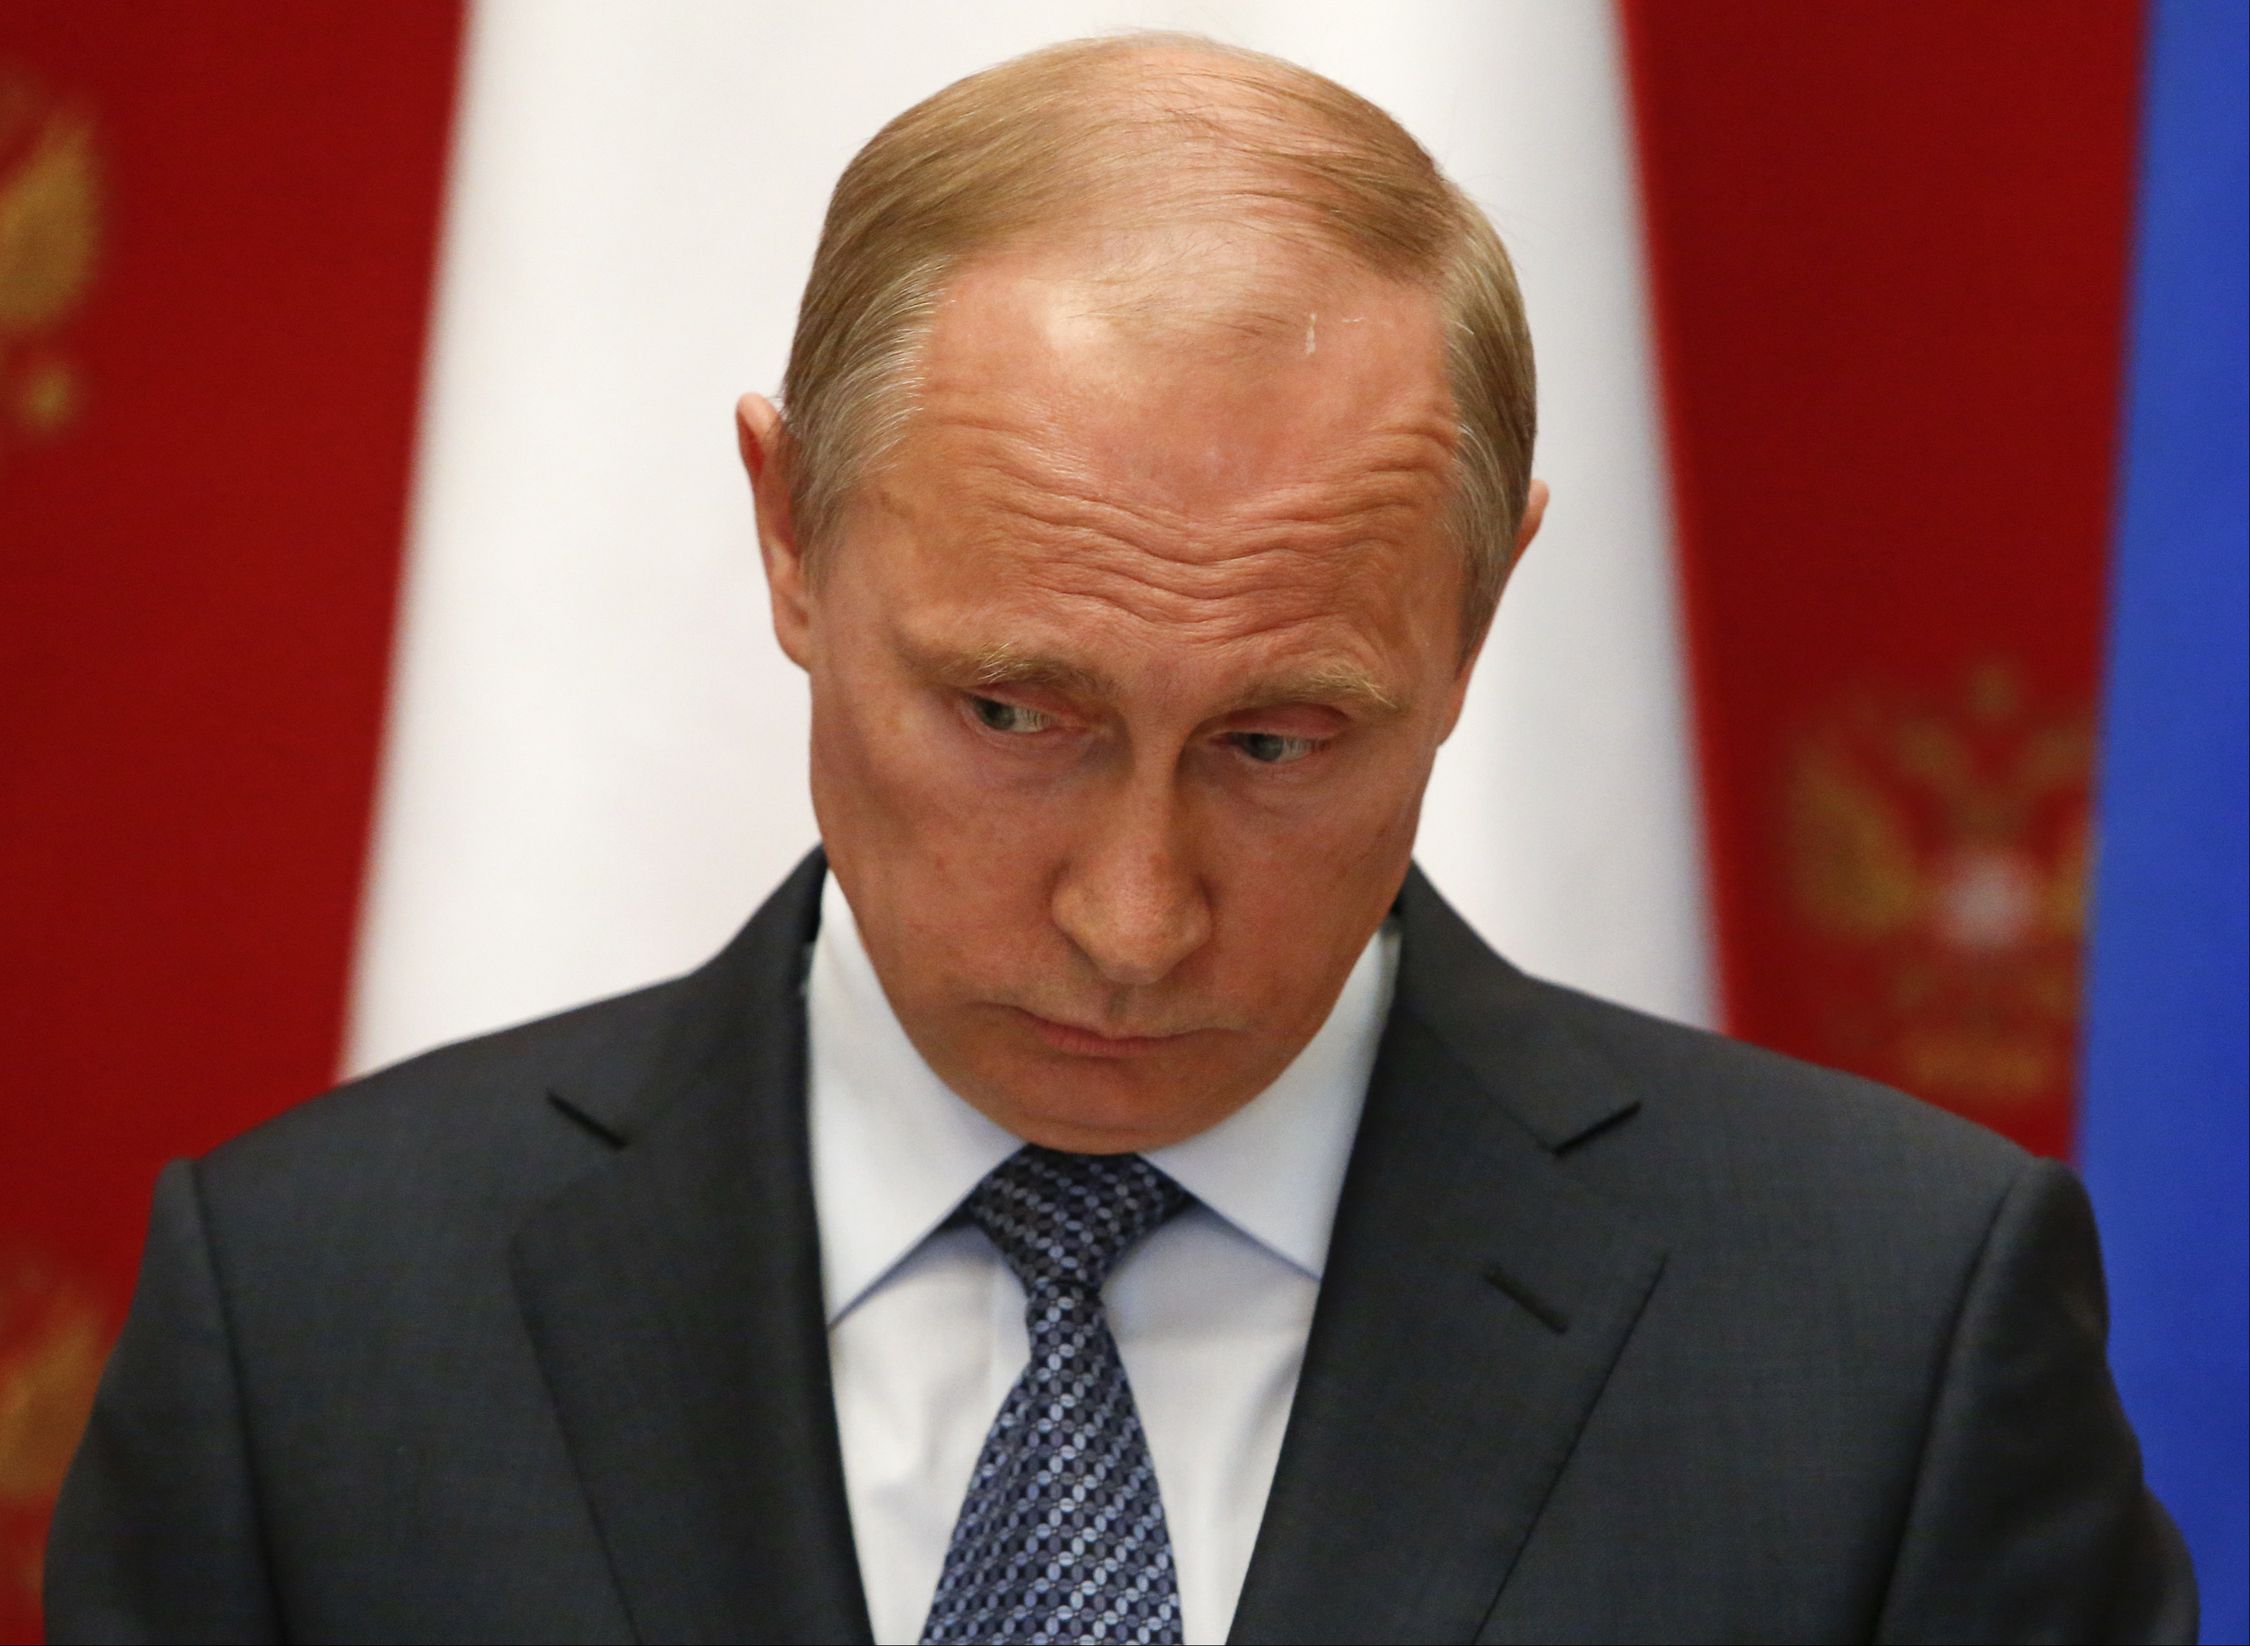 Портников: Путин будет добиваться признания нового президента США. А что у него за душой, кроме Крыма, Донбасса и Сирии?